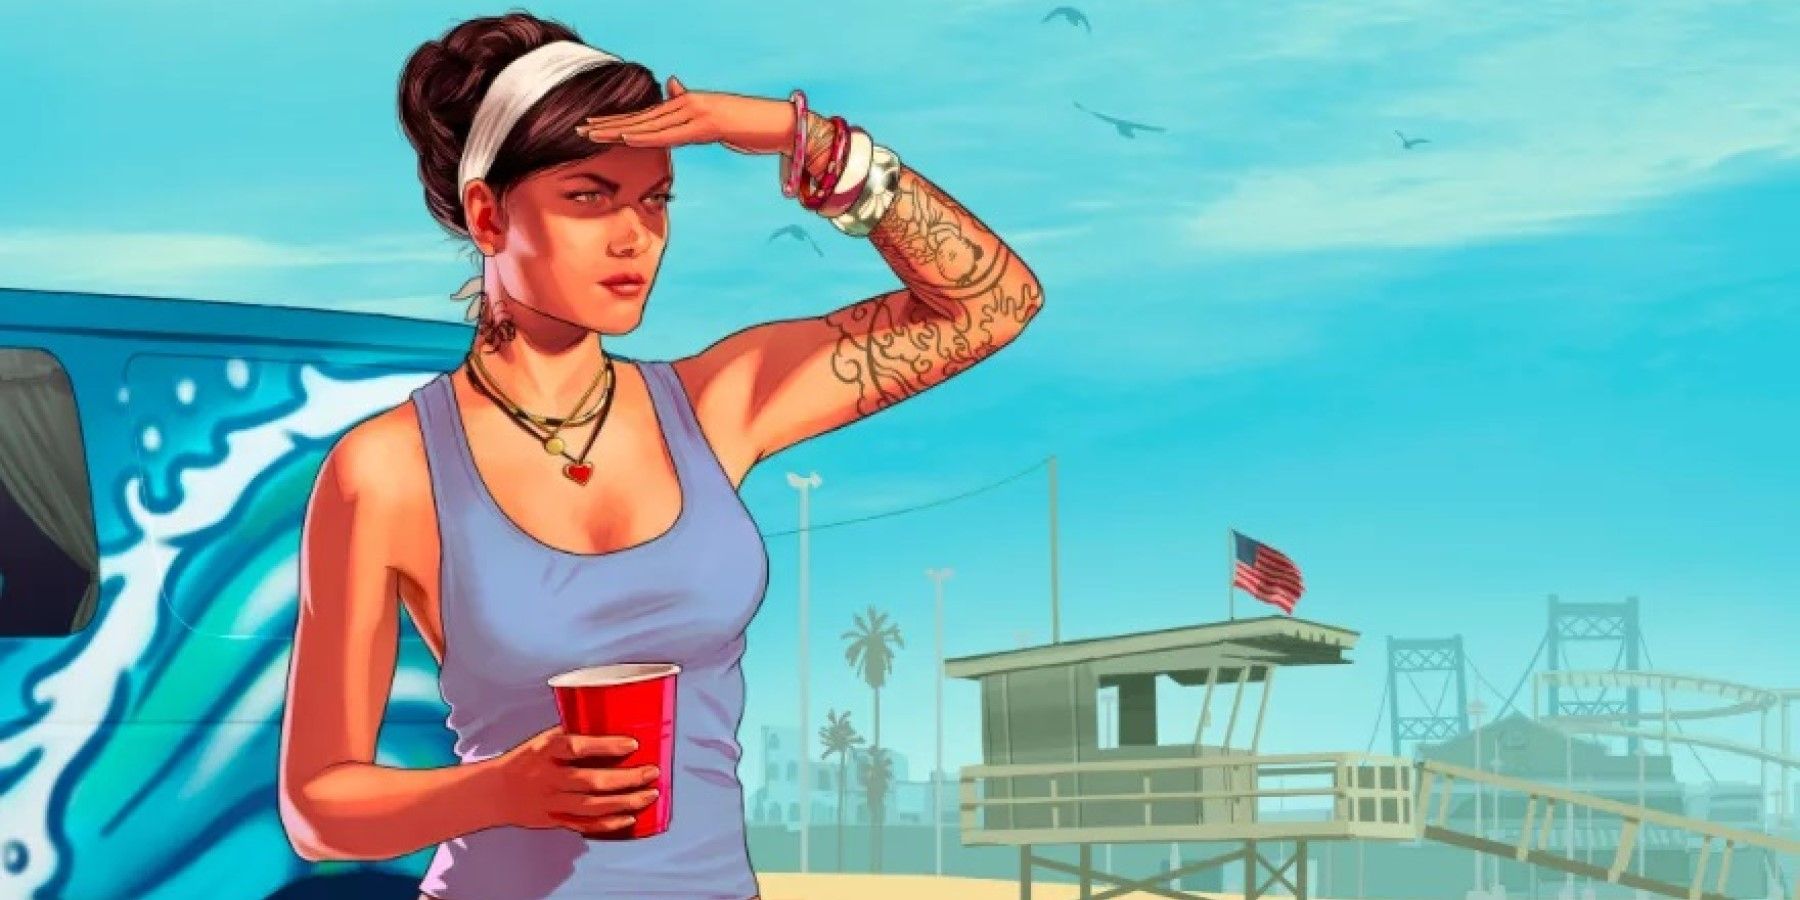 Toate zvonurile, scurgerile și rapoartele recente Grand Theft Auto 6